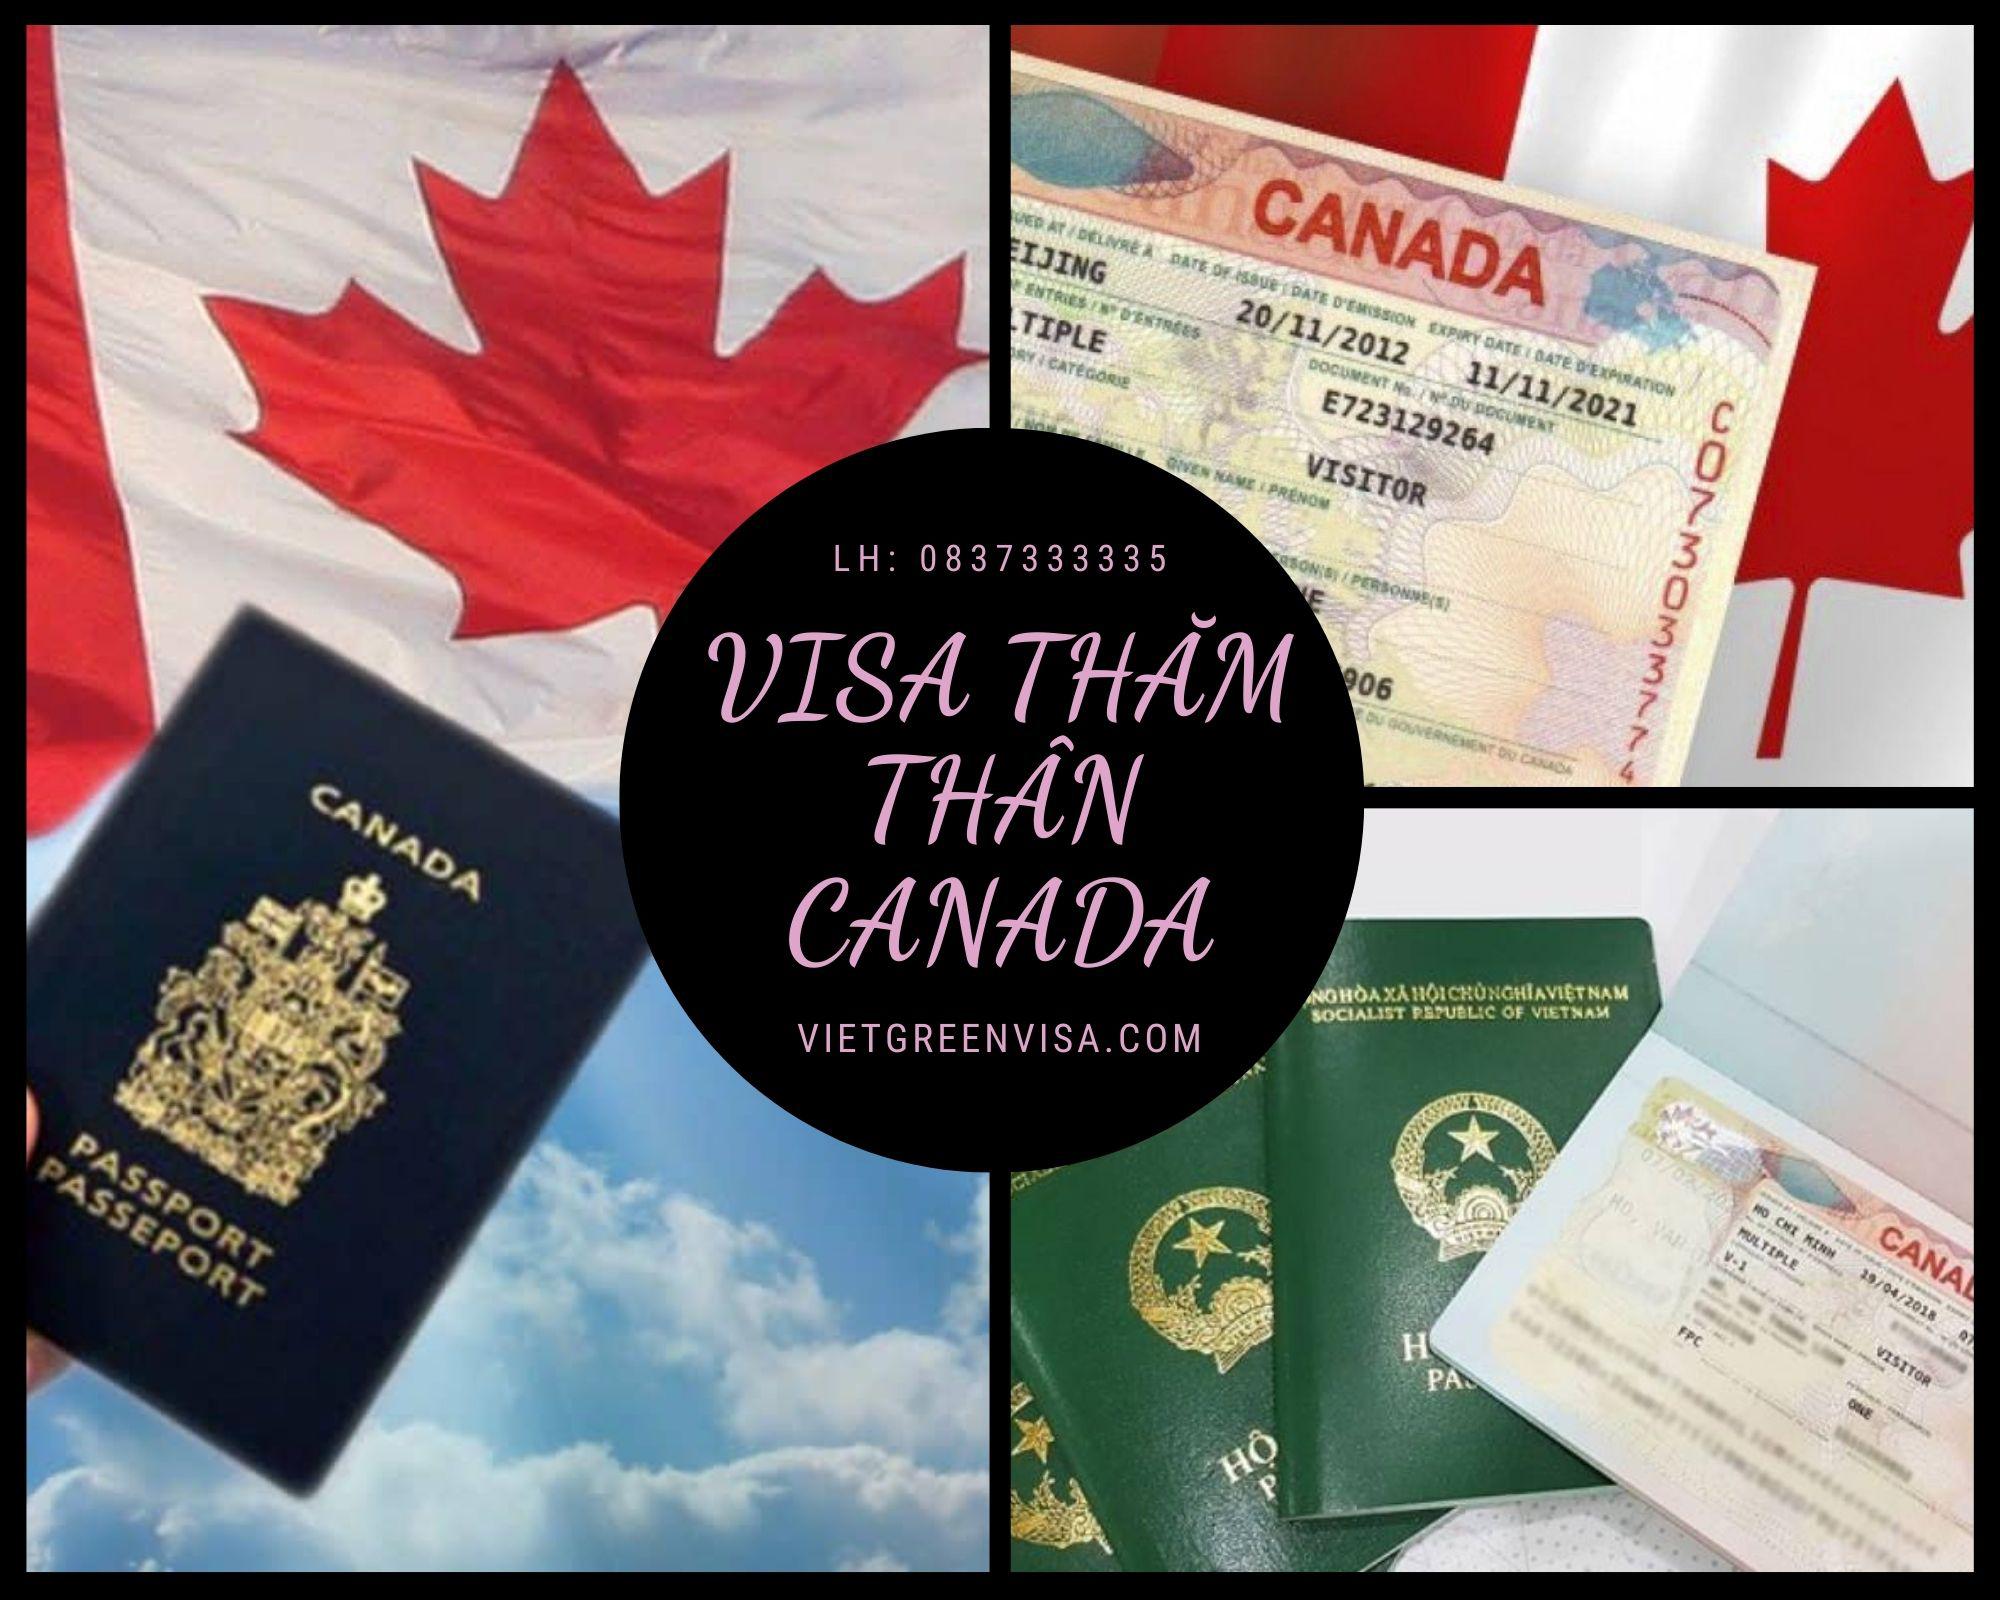 Dịch vụ xin Visa Canada thăm thân, nhanh gọn, giá rẻ